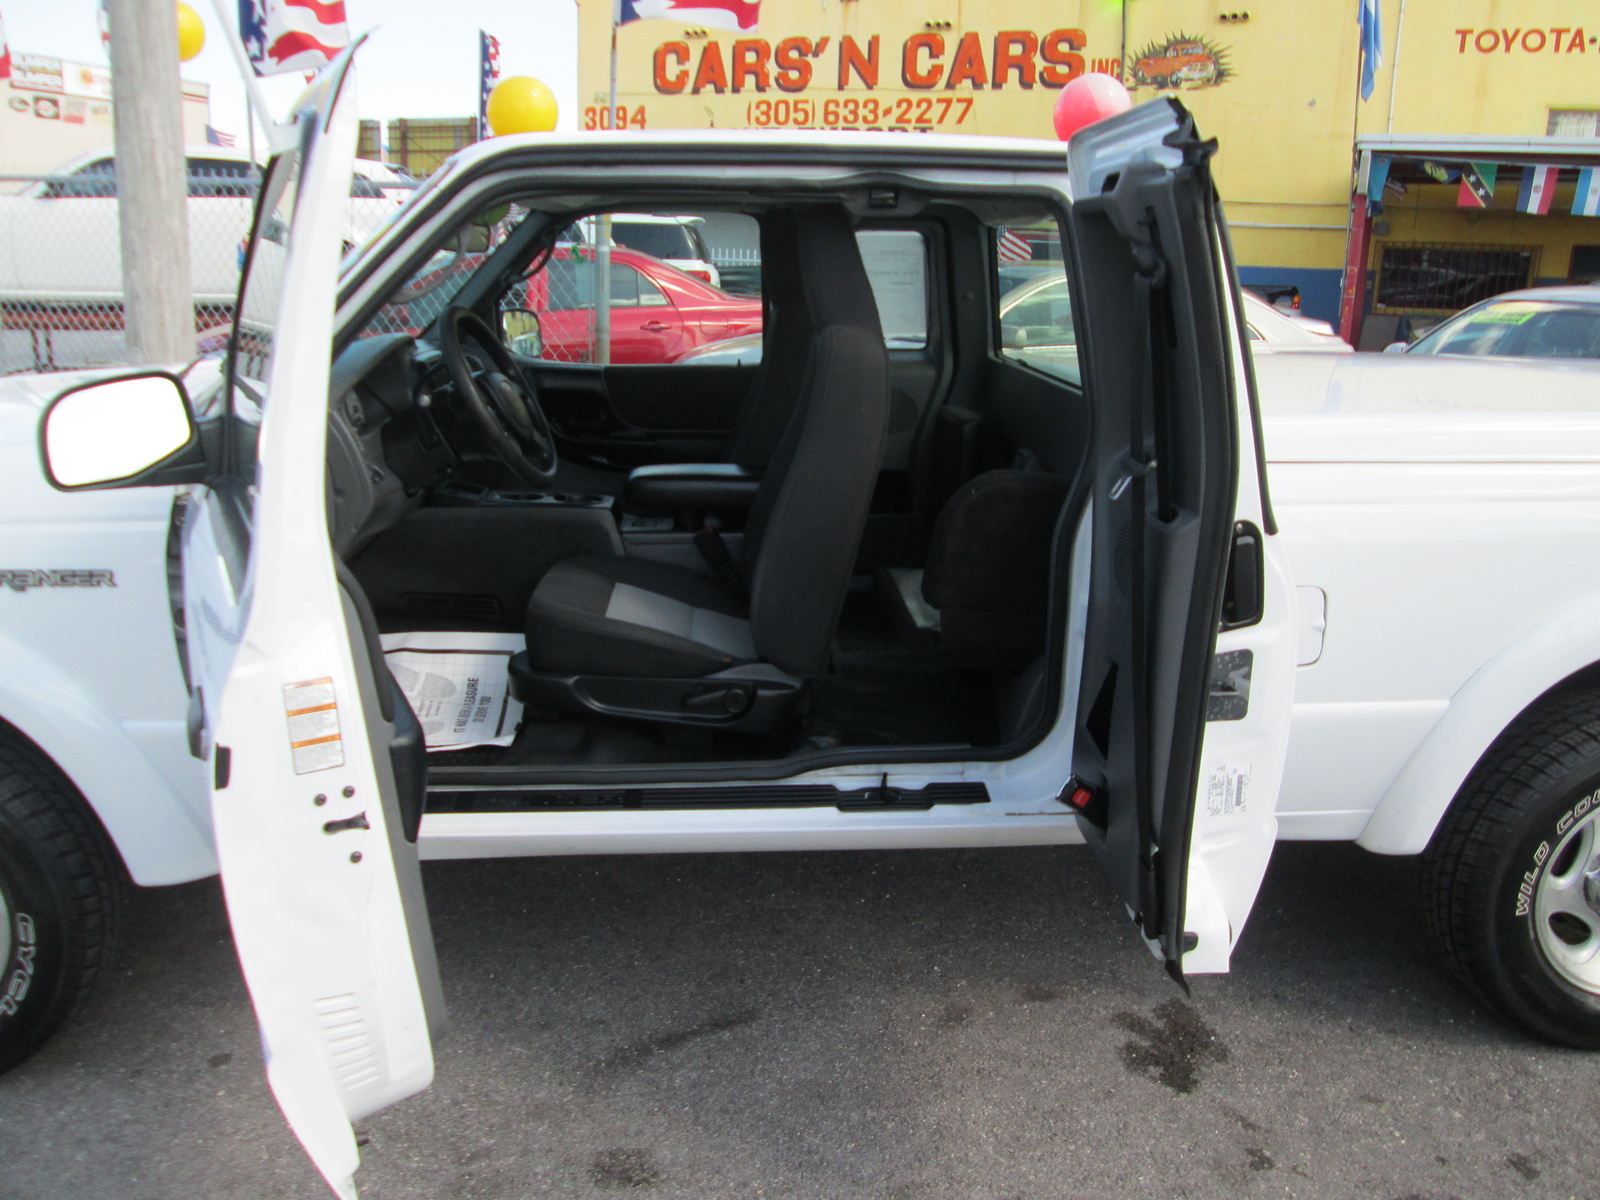 2004 Ford ranger extended cab wheelbase #10